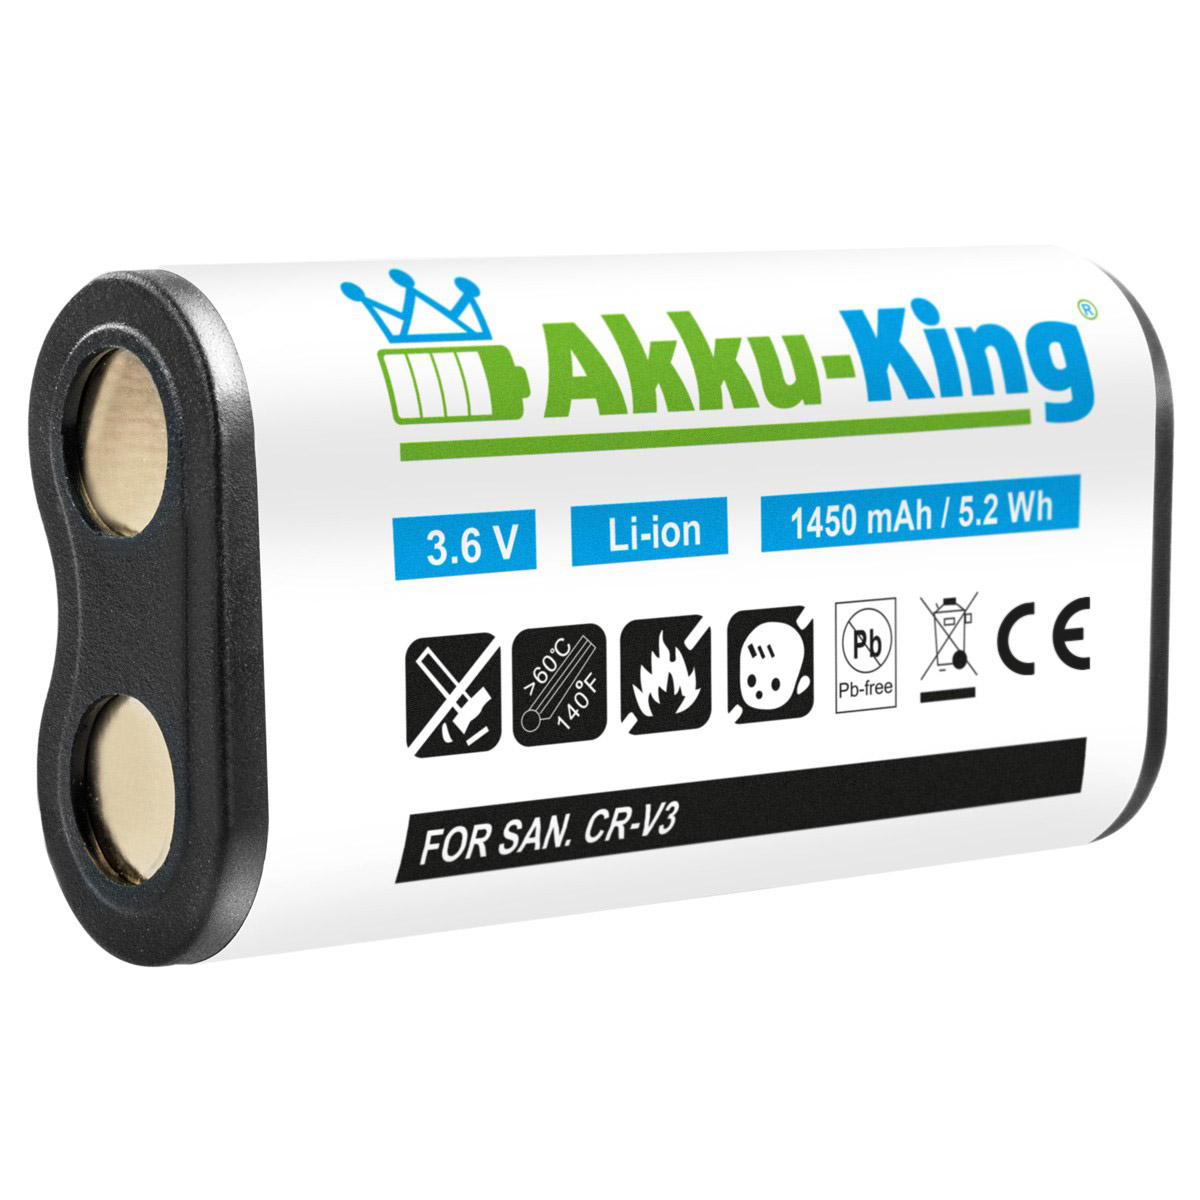 Kamera-Akku, AKKU-KING 1450mAh kompatibel CR-V3 mit 3.6 Volt, Li-Ion Nikon Akku